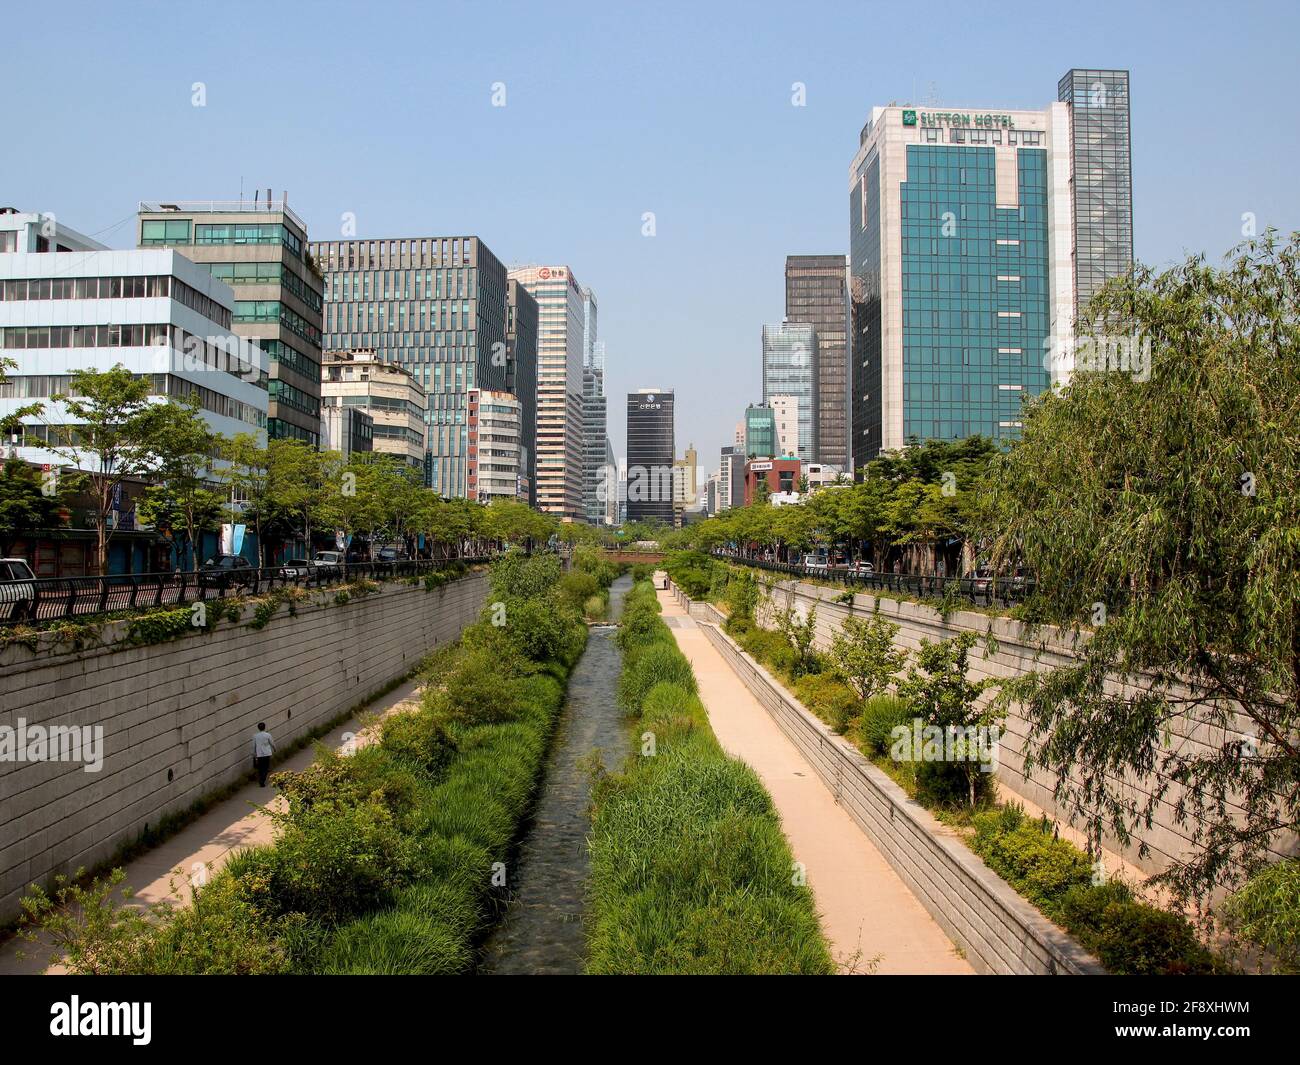 Entlang Cheonggyecheon, ein Projekt zur Stadterneuerung von Grünflächen, Flüssen und Parks. In Seoul, Südkorea. Stockfoto